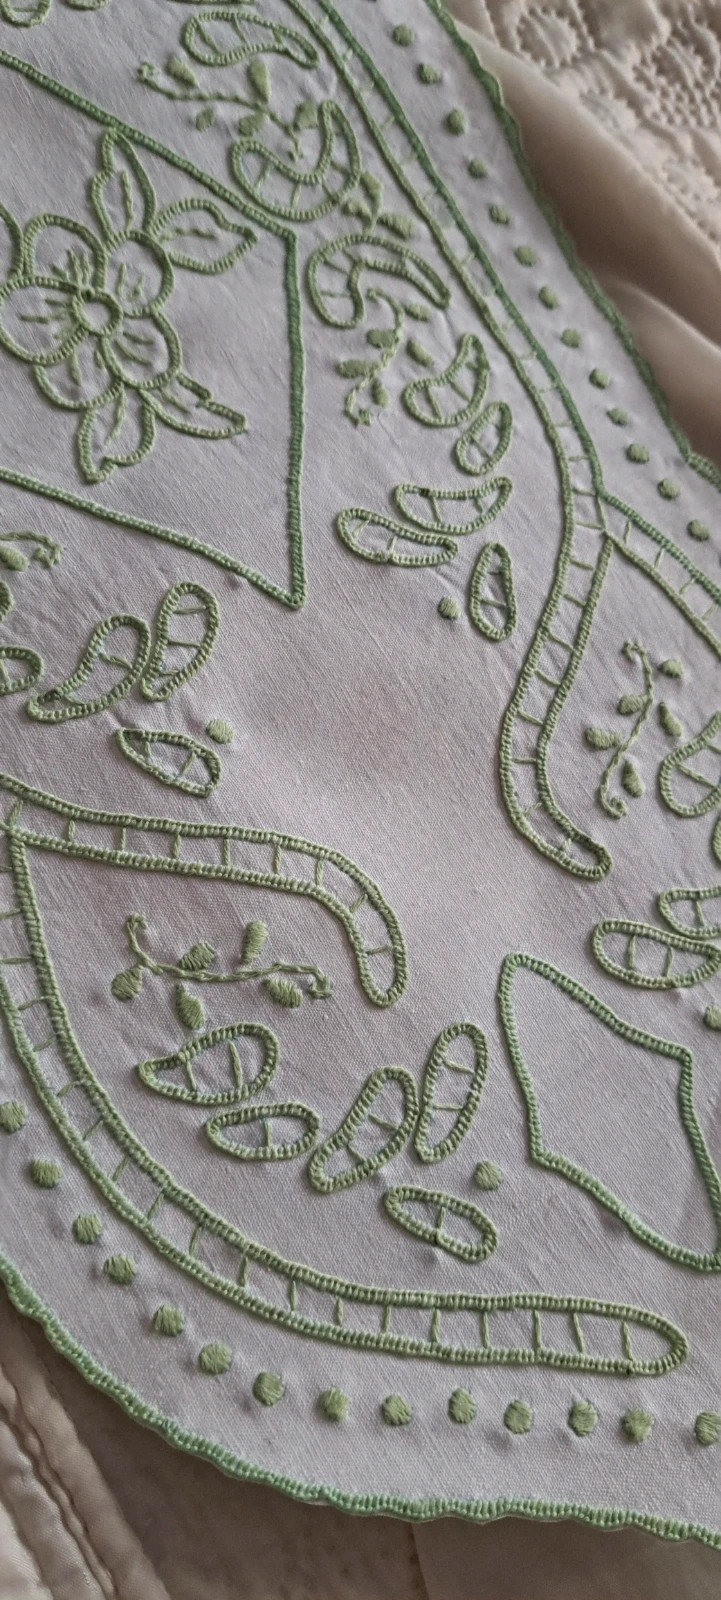 Ręcznie haftowana serweta